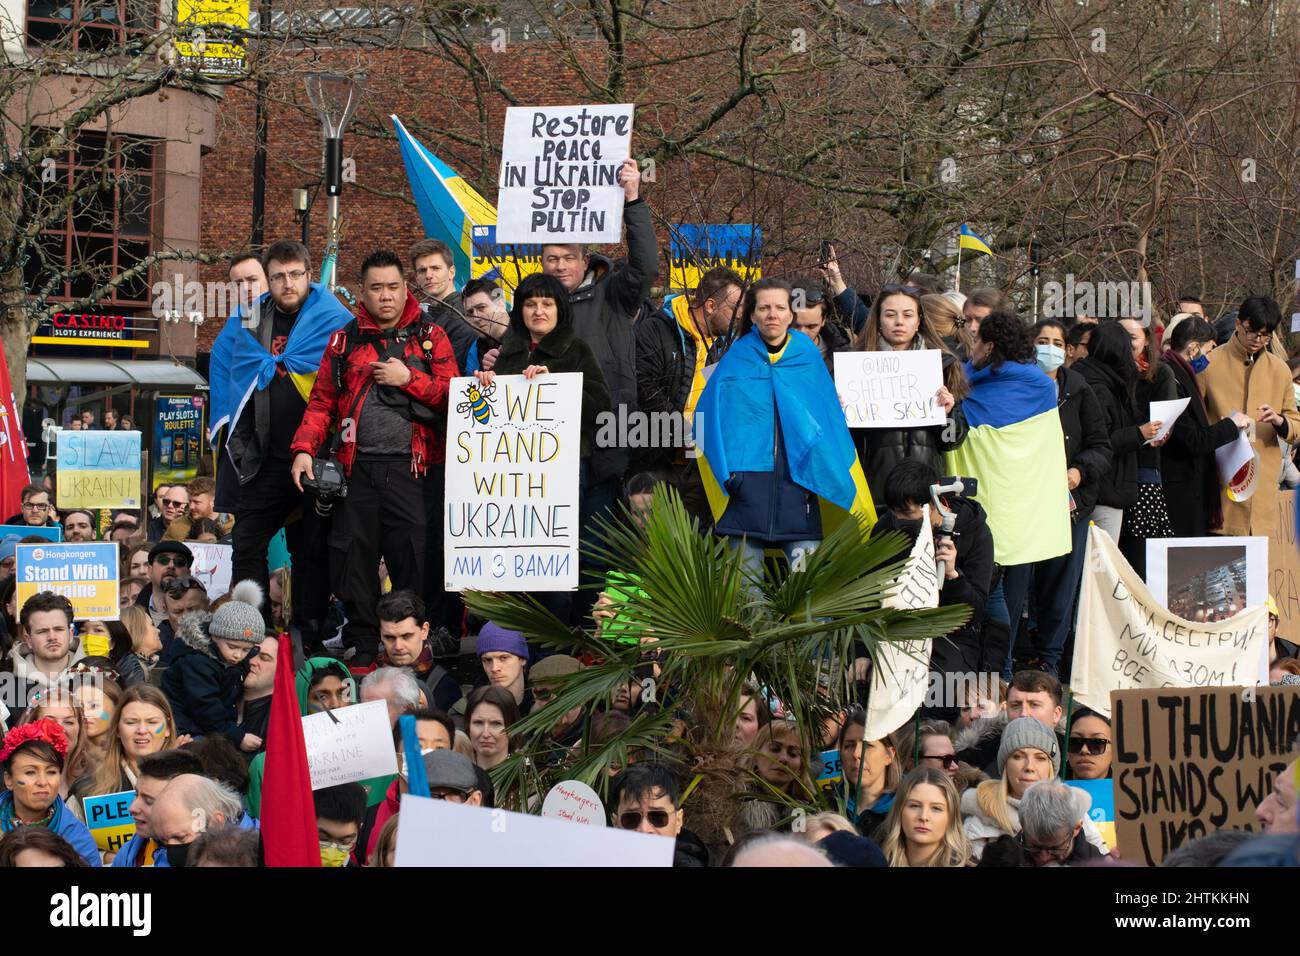 Stand avec manifestation en Ukraine, Piccadilly Gardens, Manchester, Royaume-Uni. Protester avec un texte signé Restore Peace in Ukraine Arrêtez Poutine Banque D'Images